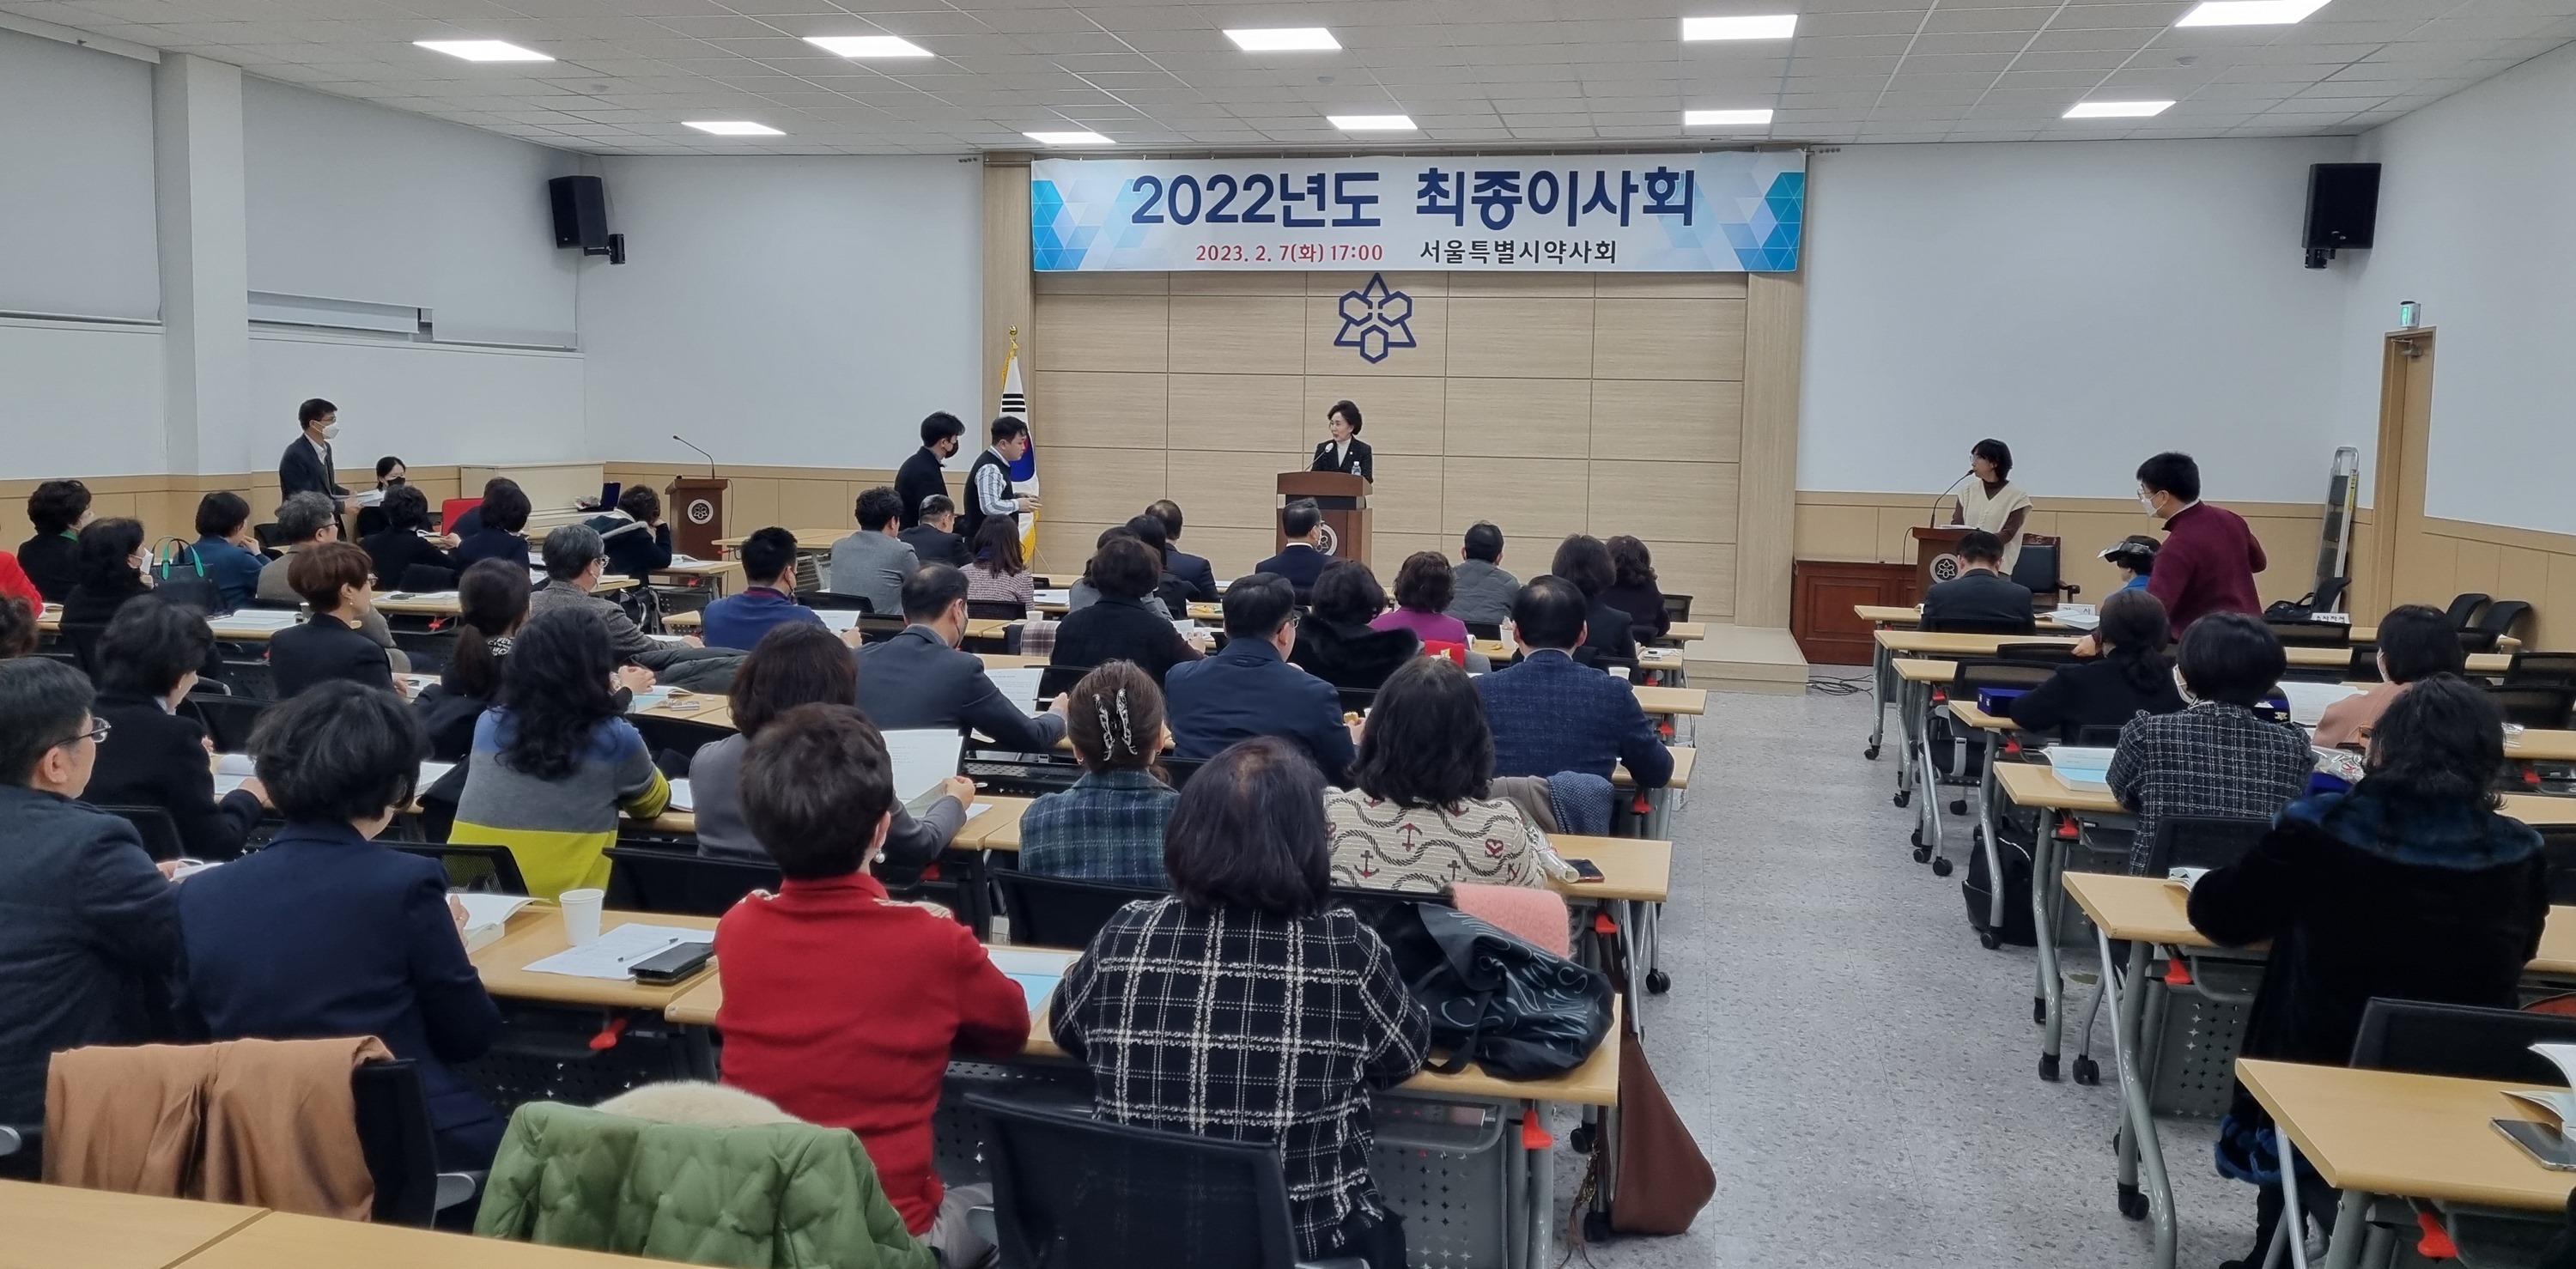 서울시약사회, 성분명 처방 도입에 집중…현안 해결 위한 협력 당부